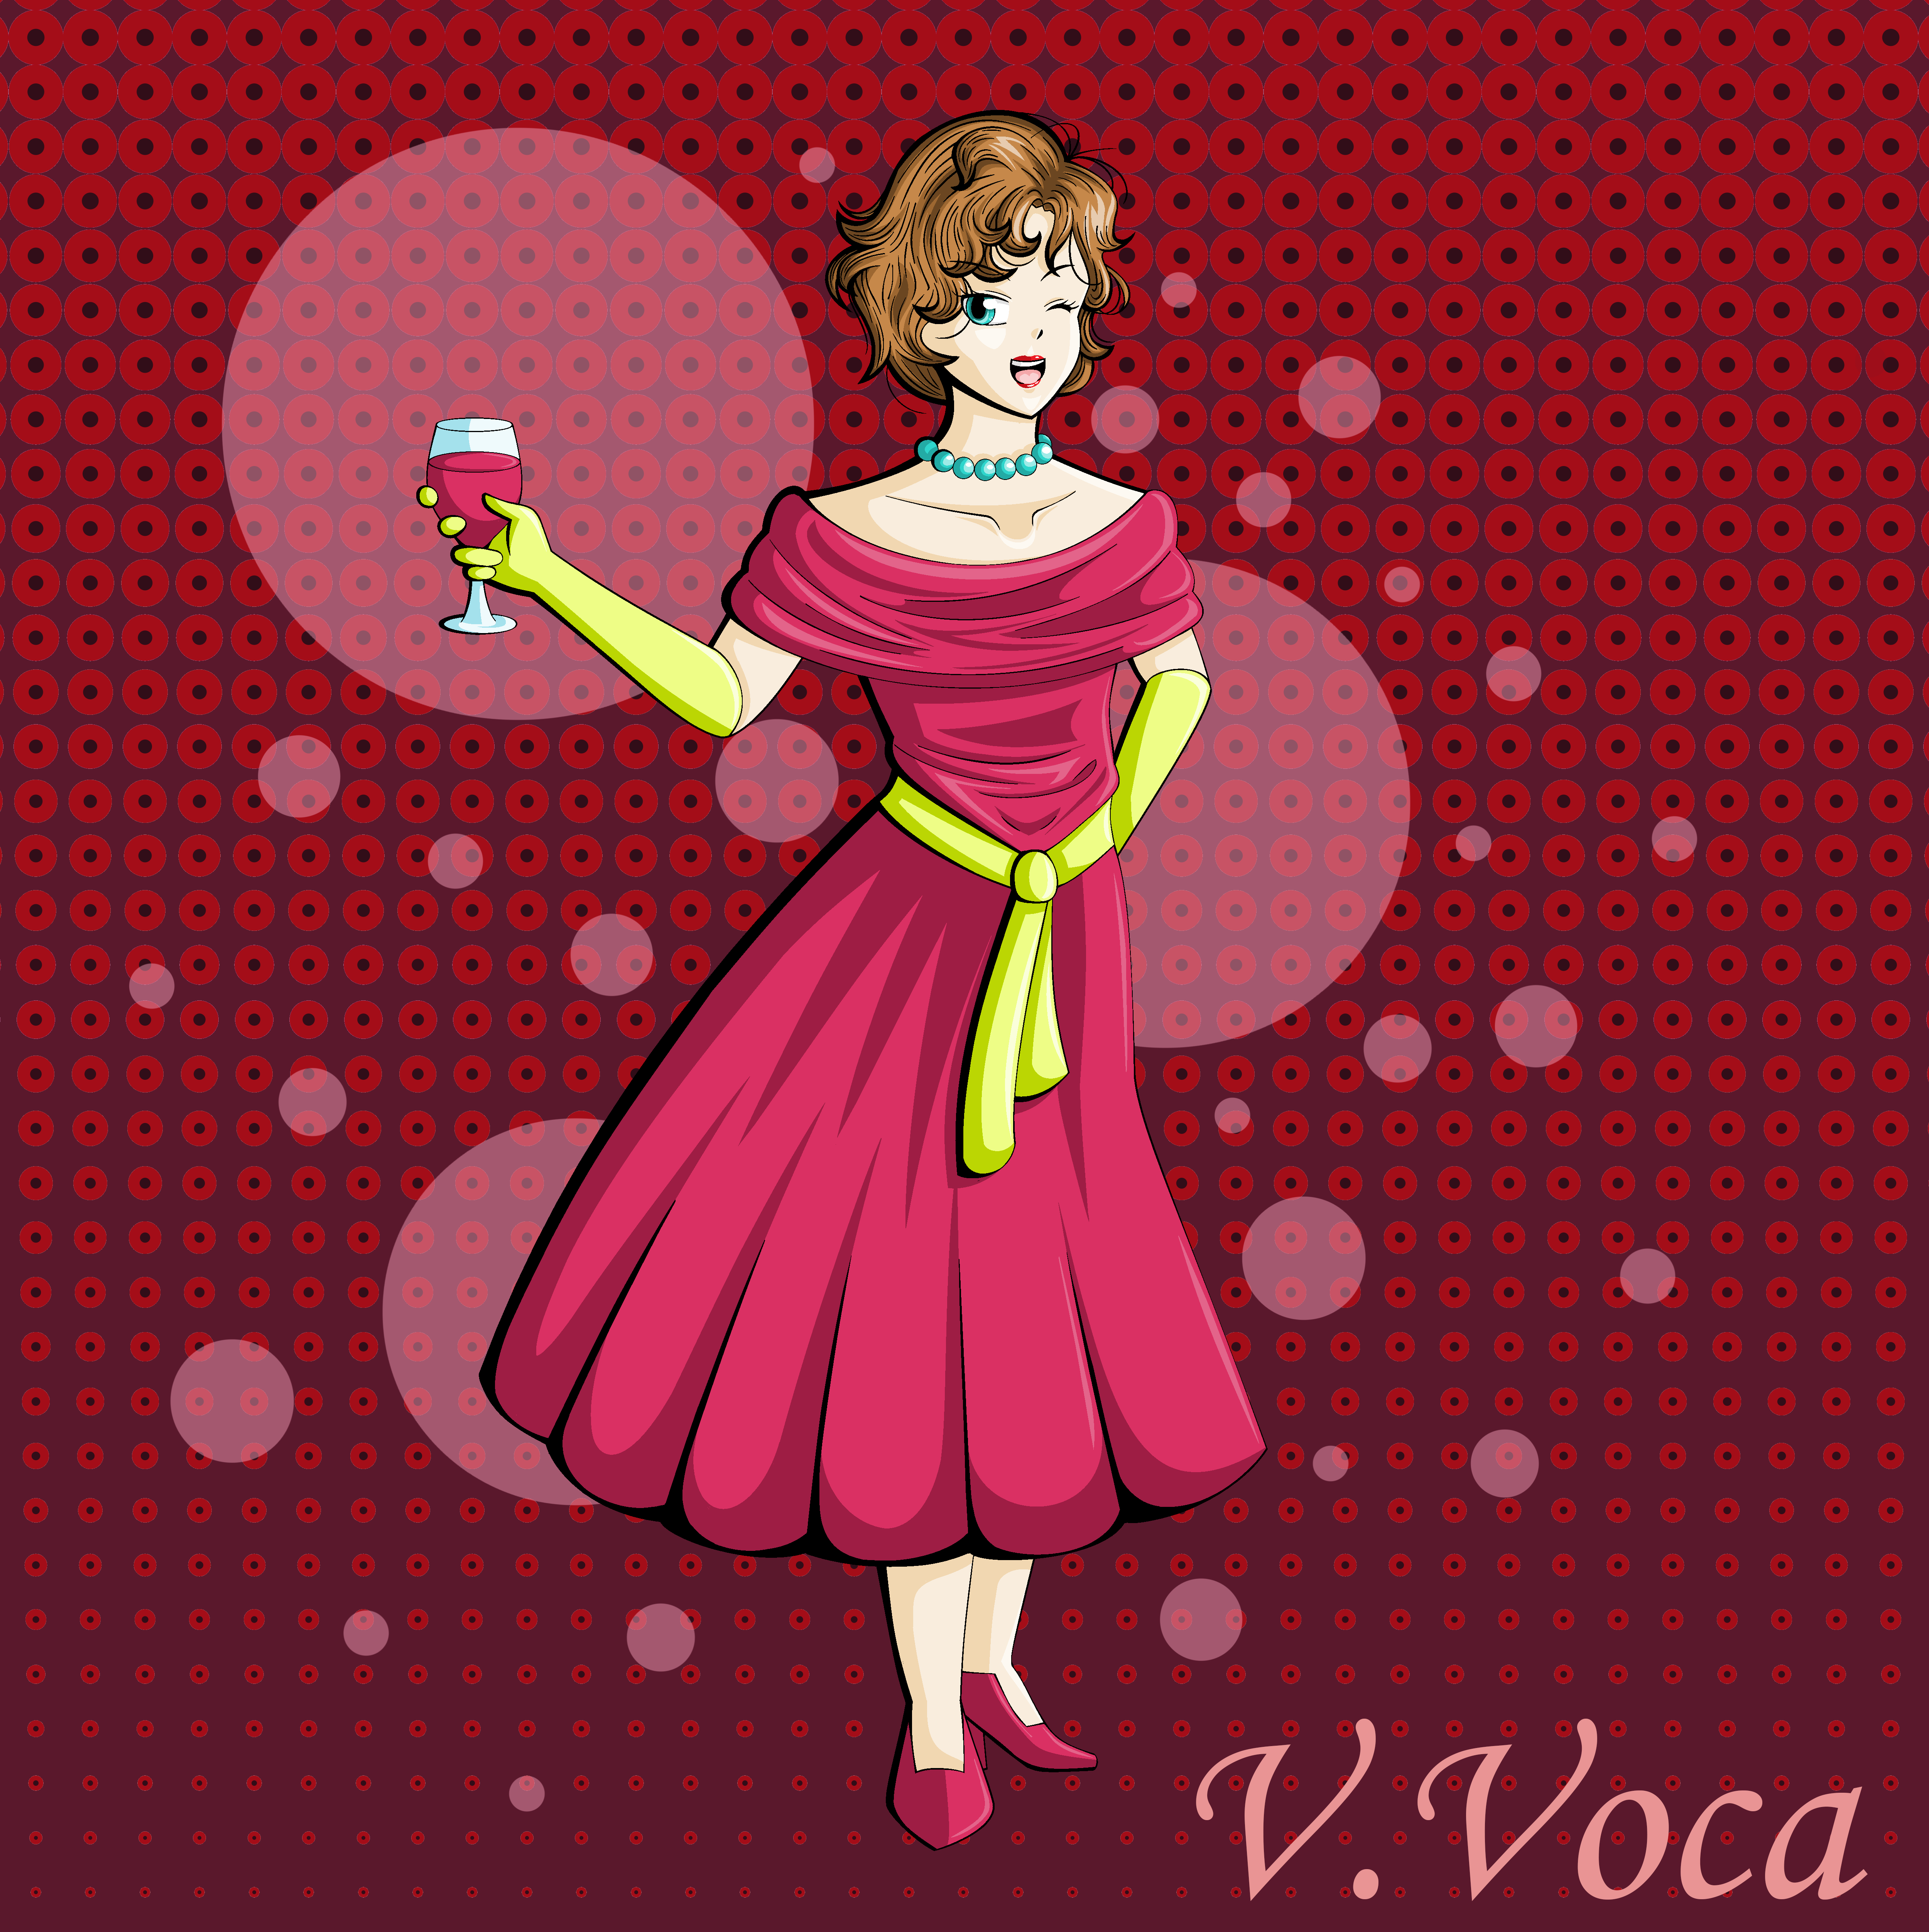 Fancy Lady In A Fancy Dress on A Fancy Background by VVoca on DeviantArt